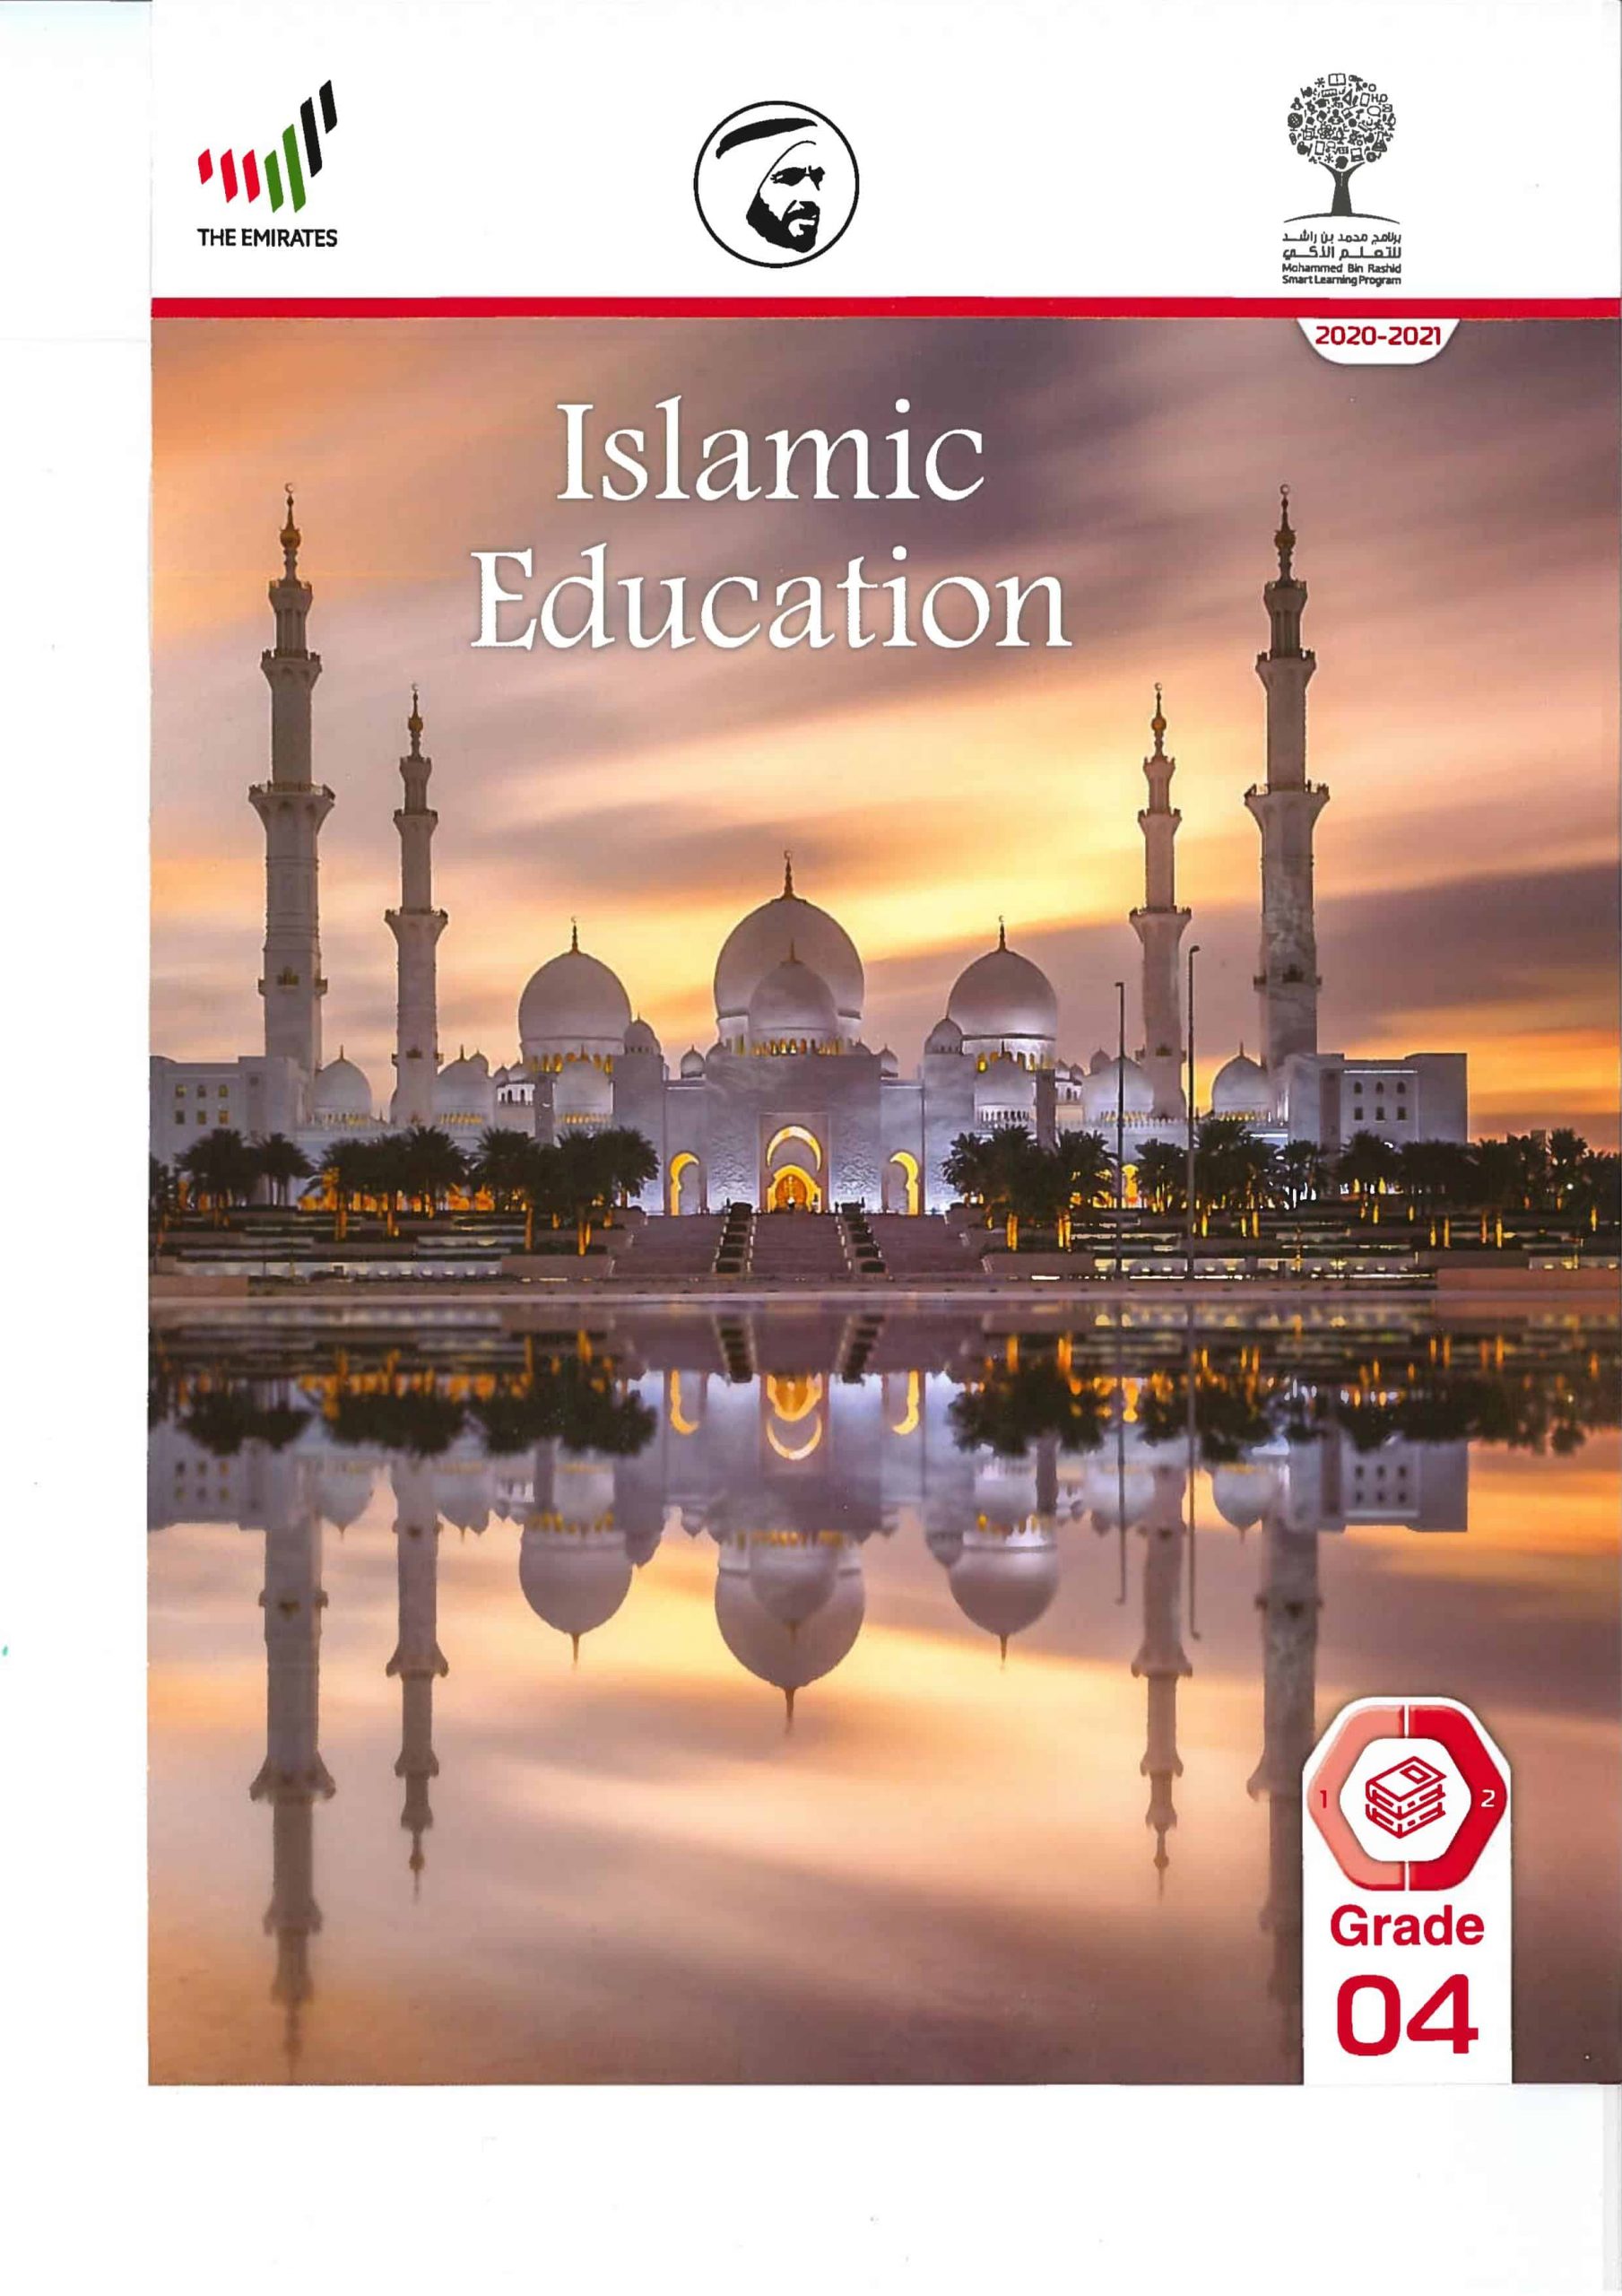 كتاب الطالب لغير الناطقين باللغة العربية الفصل الدراسي الثاني 2020-2021 الصف الرابع مادة التربية الاسلامية